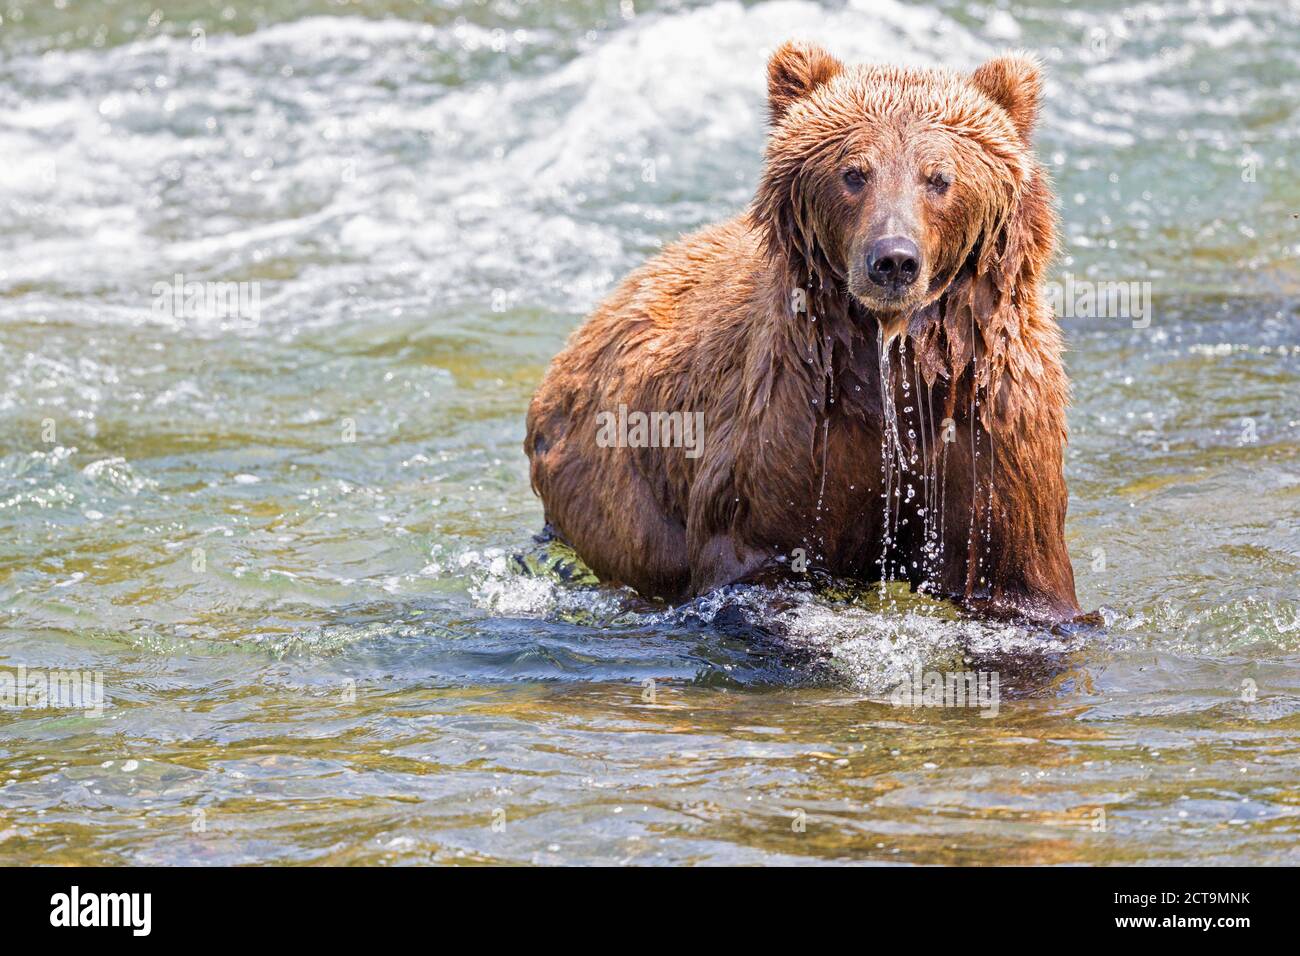 USA, Alaska, Katmai National Park, Brown bear (Ursus arctos) at Brooks Falls, foraging Stock Photo